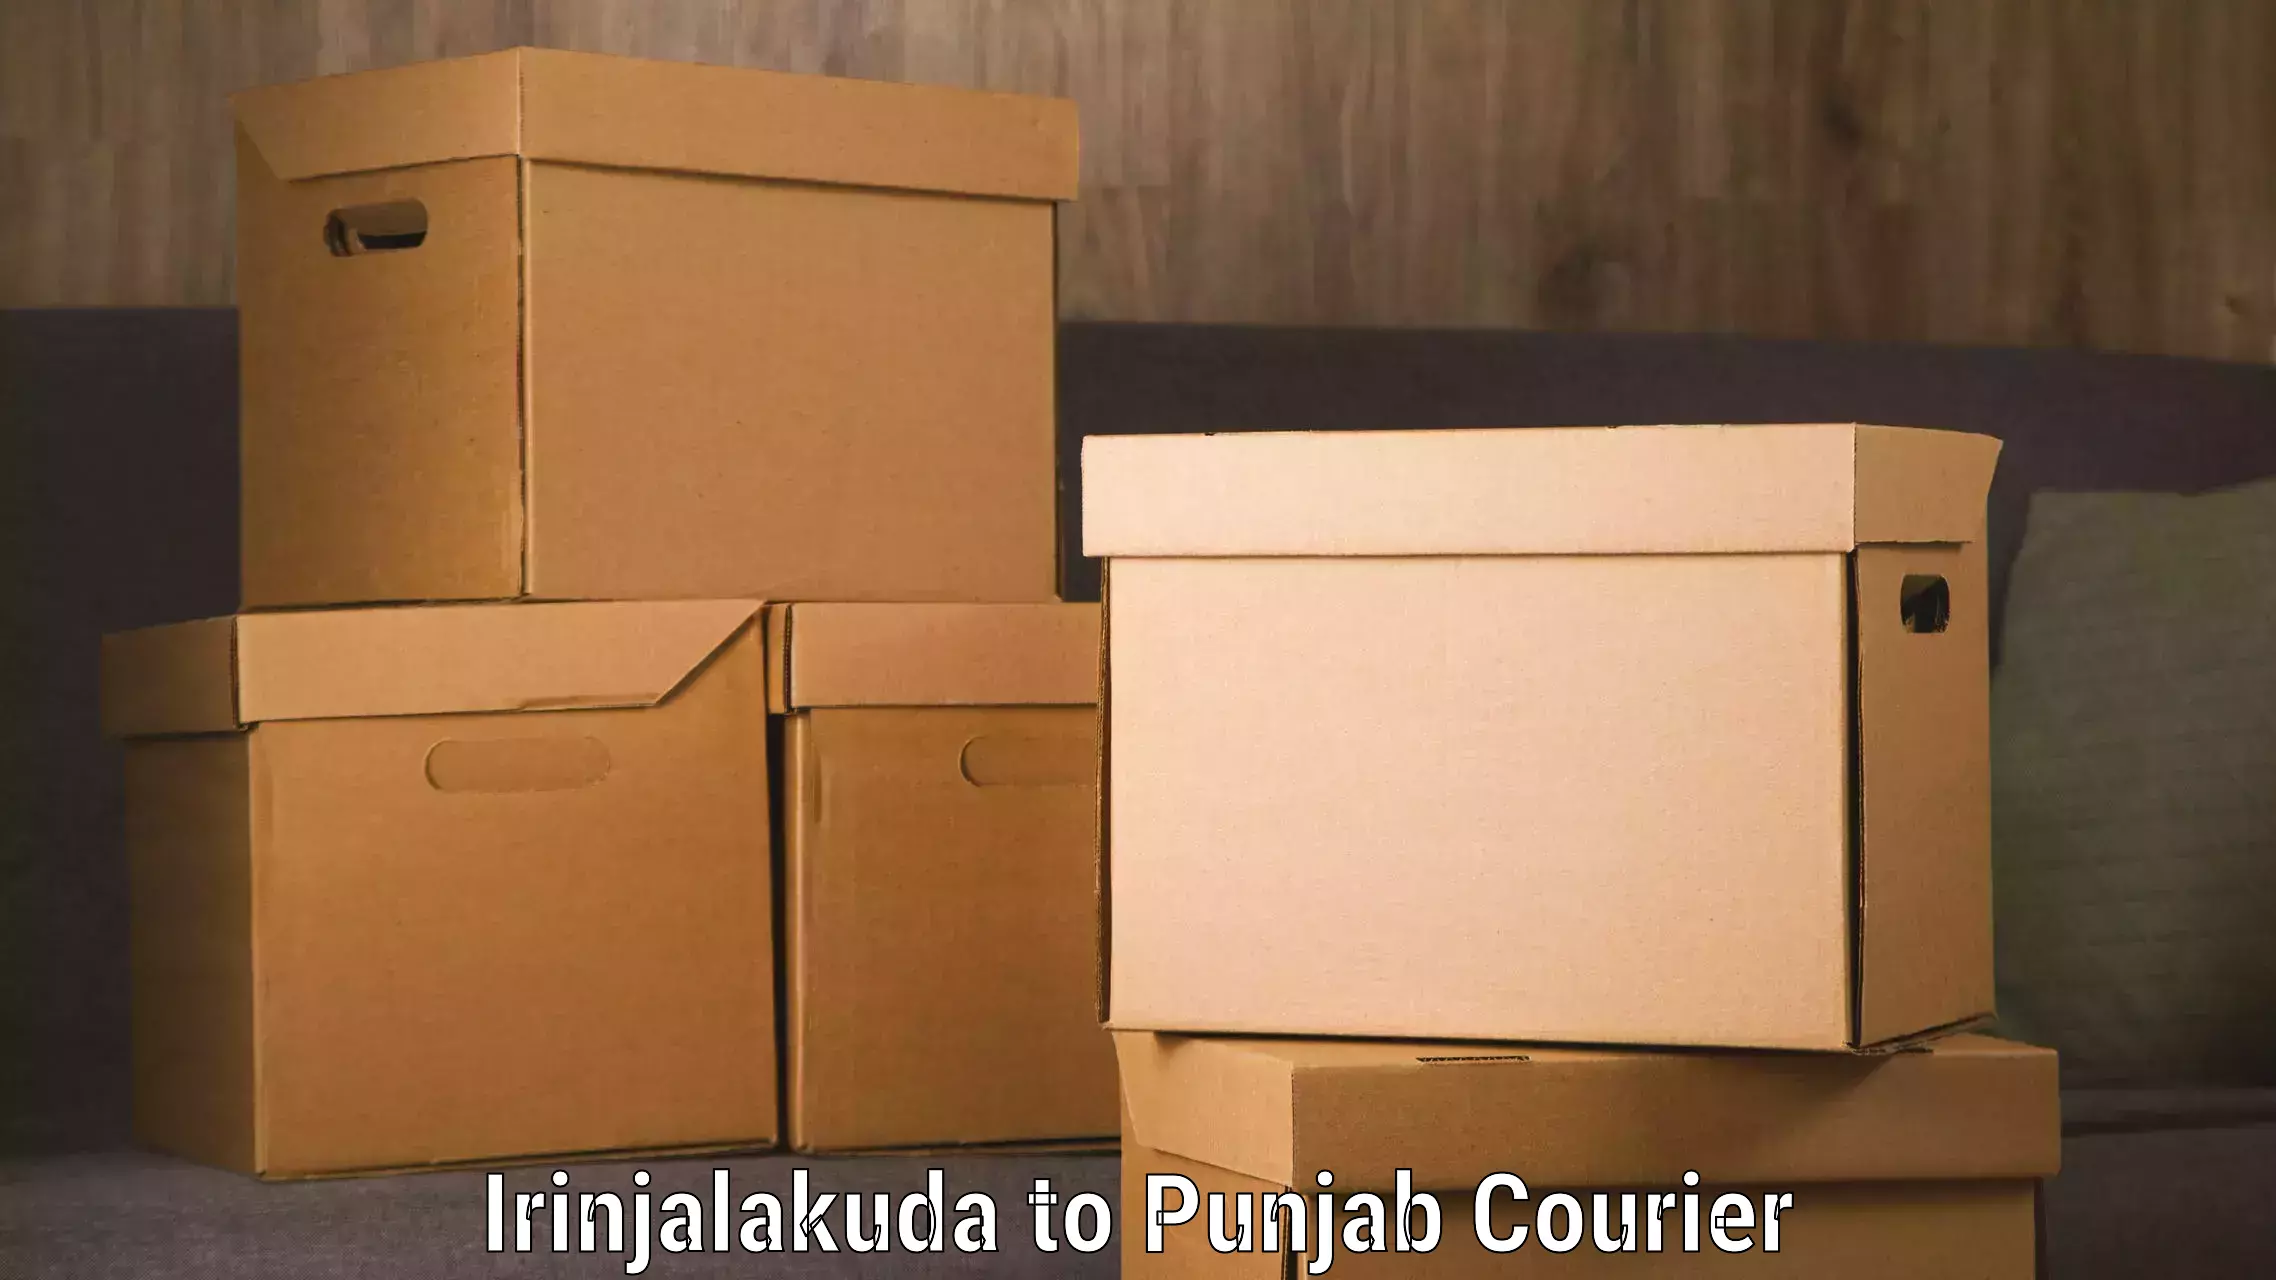 Global courier networks Irinjalakuda to Punjab